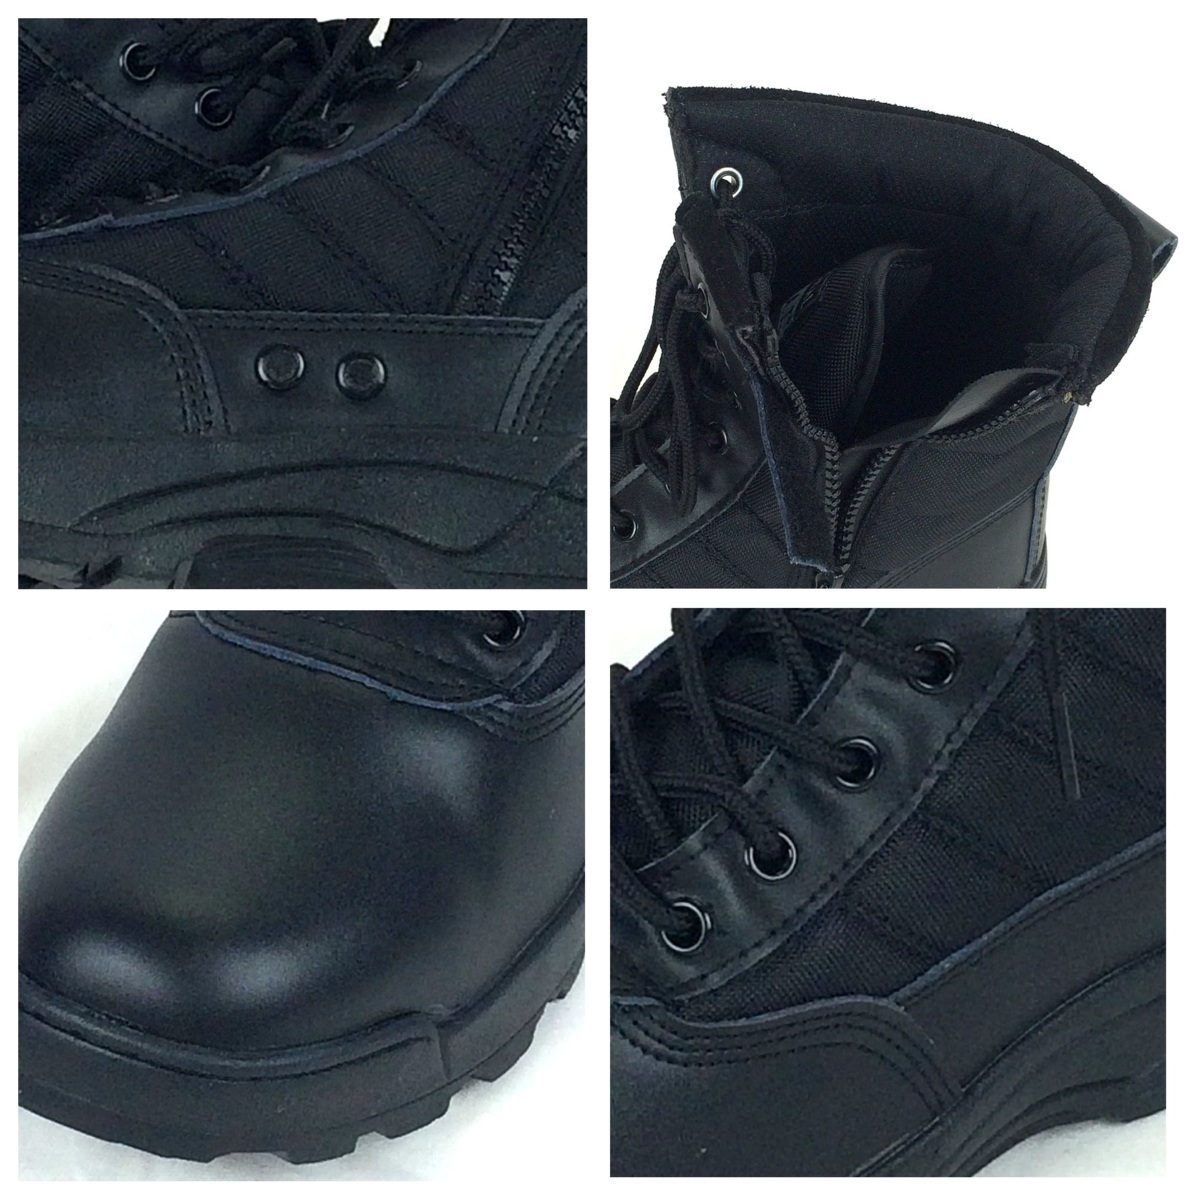  милитари ботинки Tacty karu ботинки combat ботинки rider ботинки рабочая обувь обувь боковой молния скумбиря ge мужской ботинки BK 25.5cm